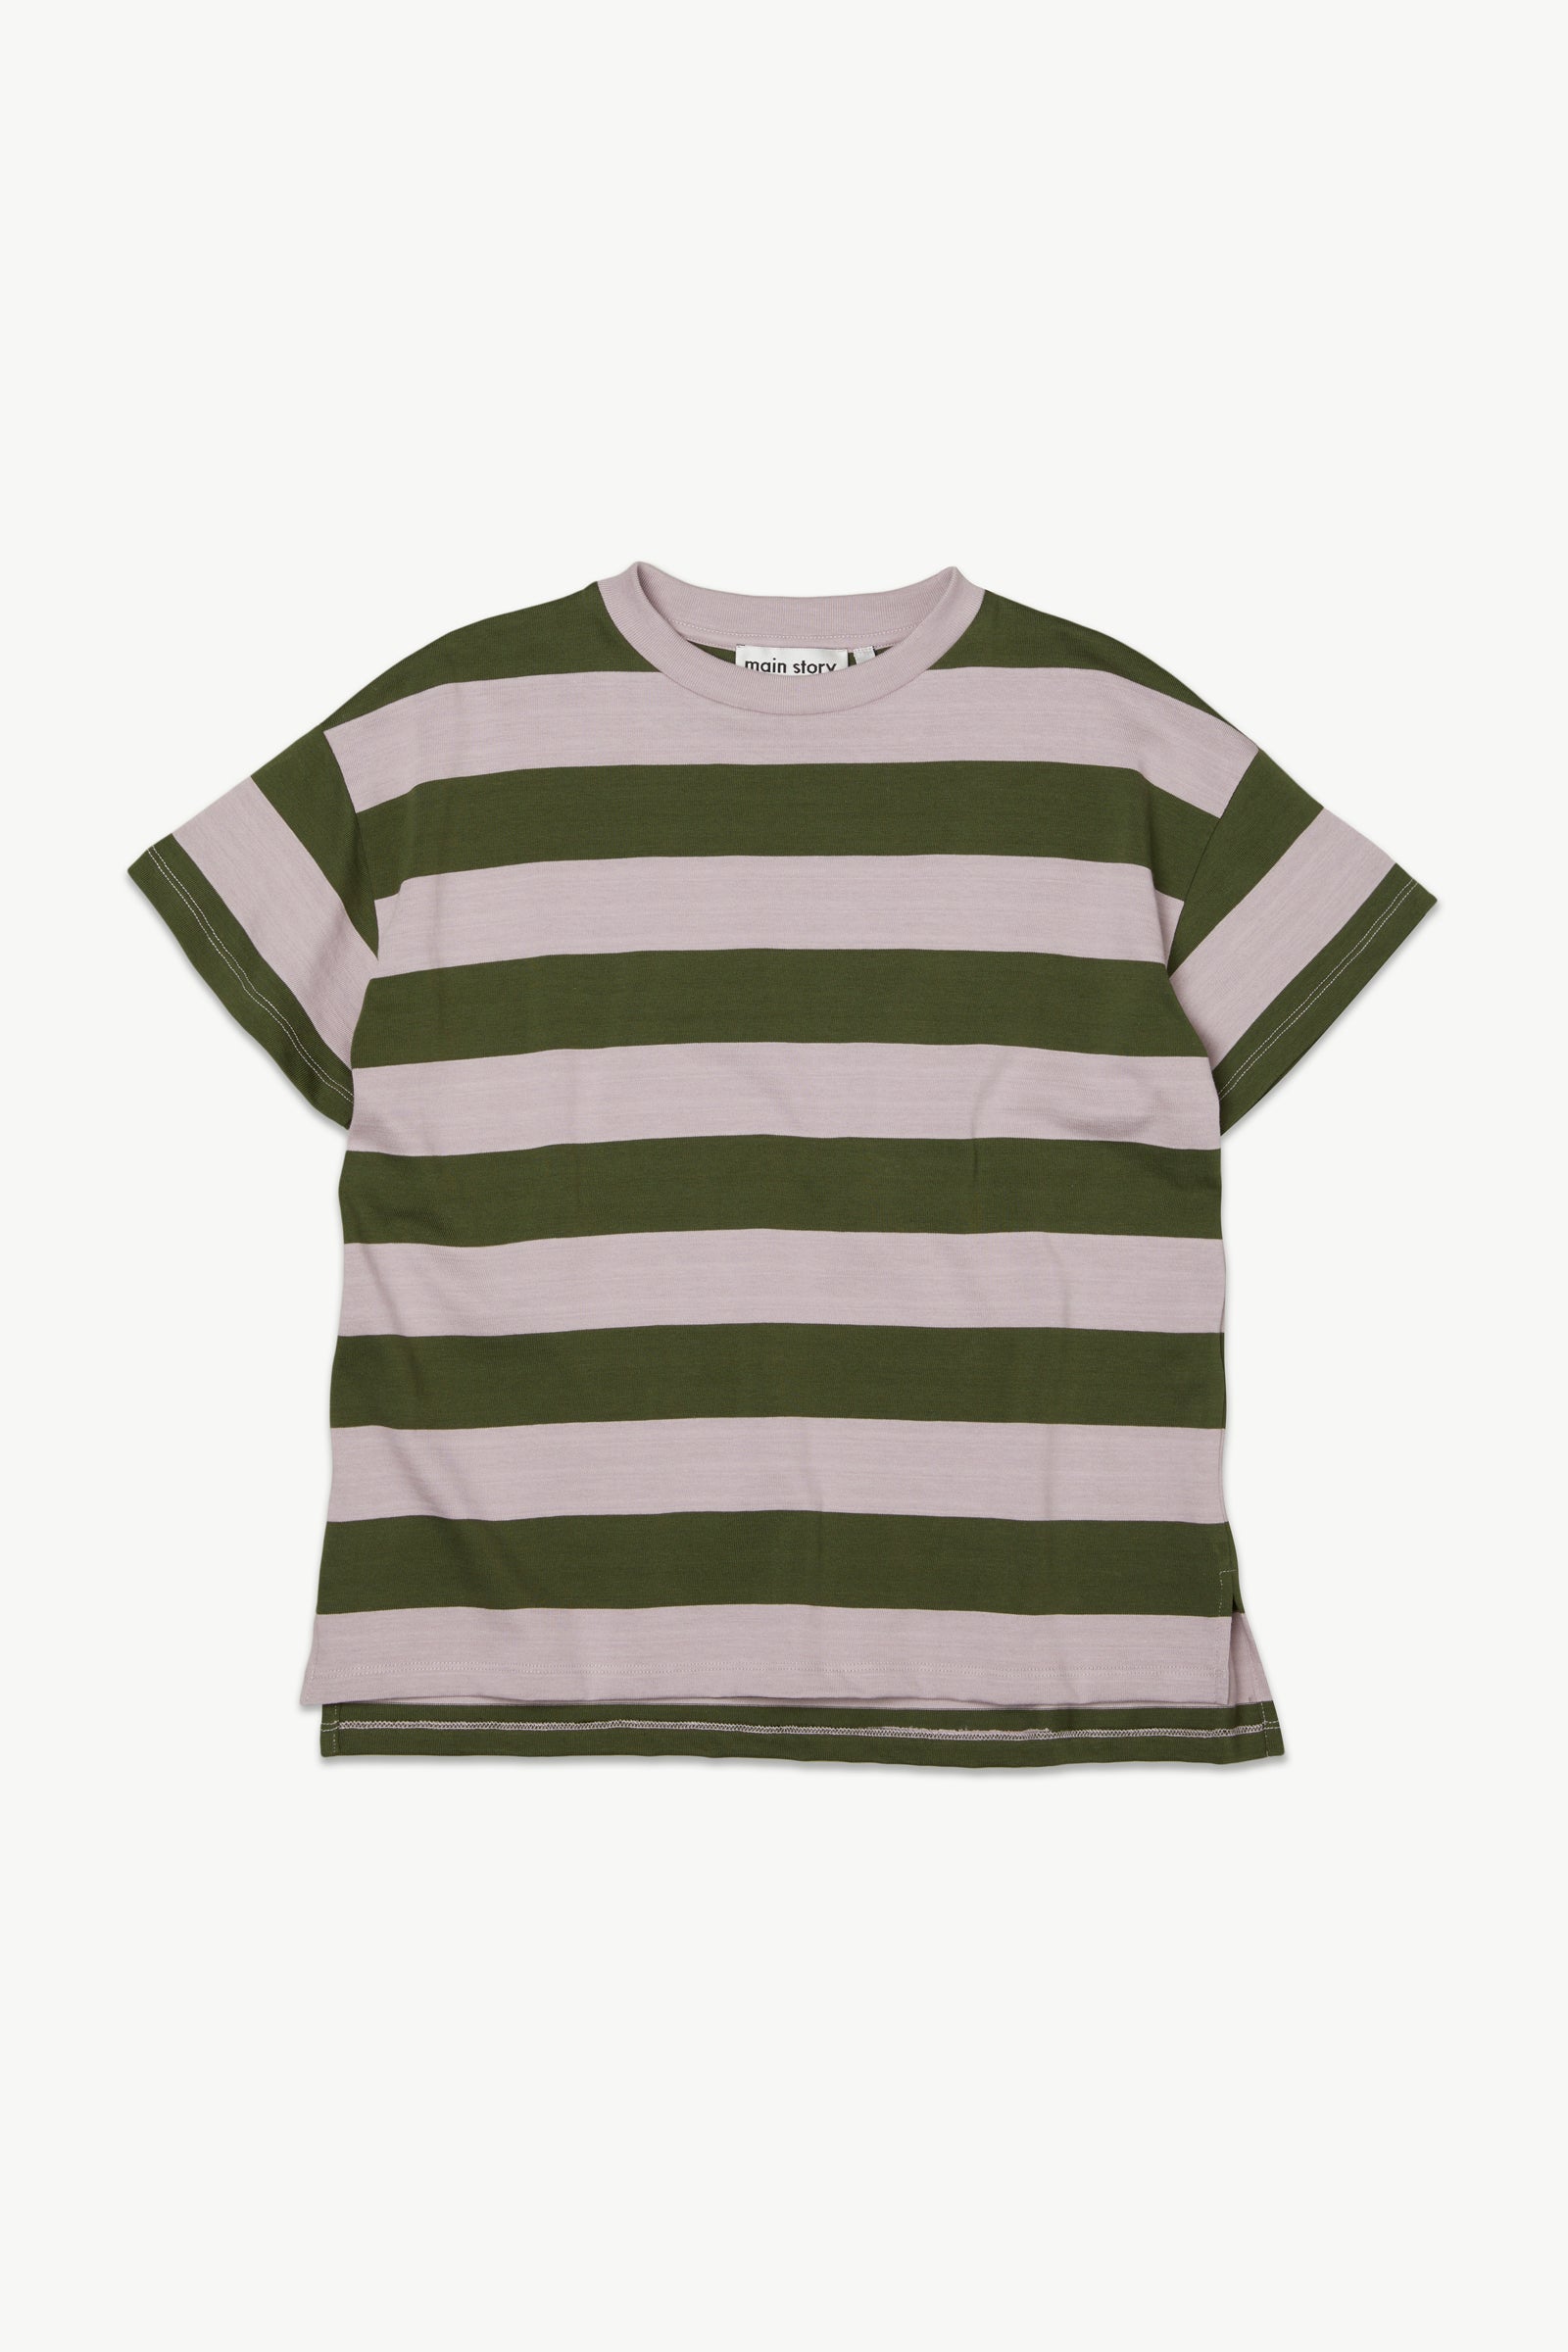 Kids sweatshirts | organic cotton | main story